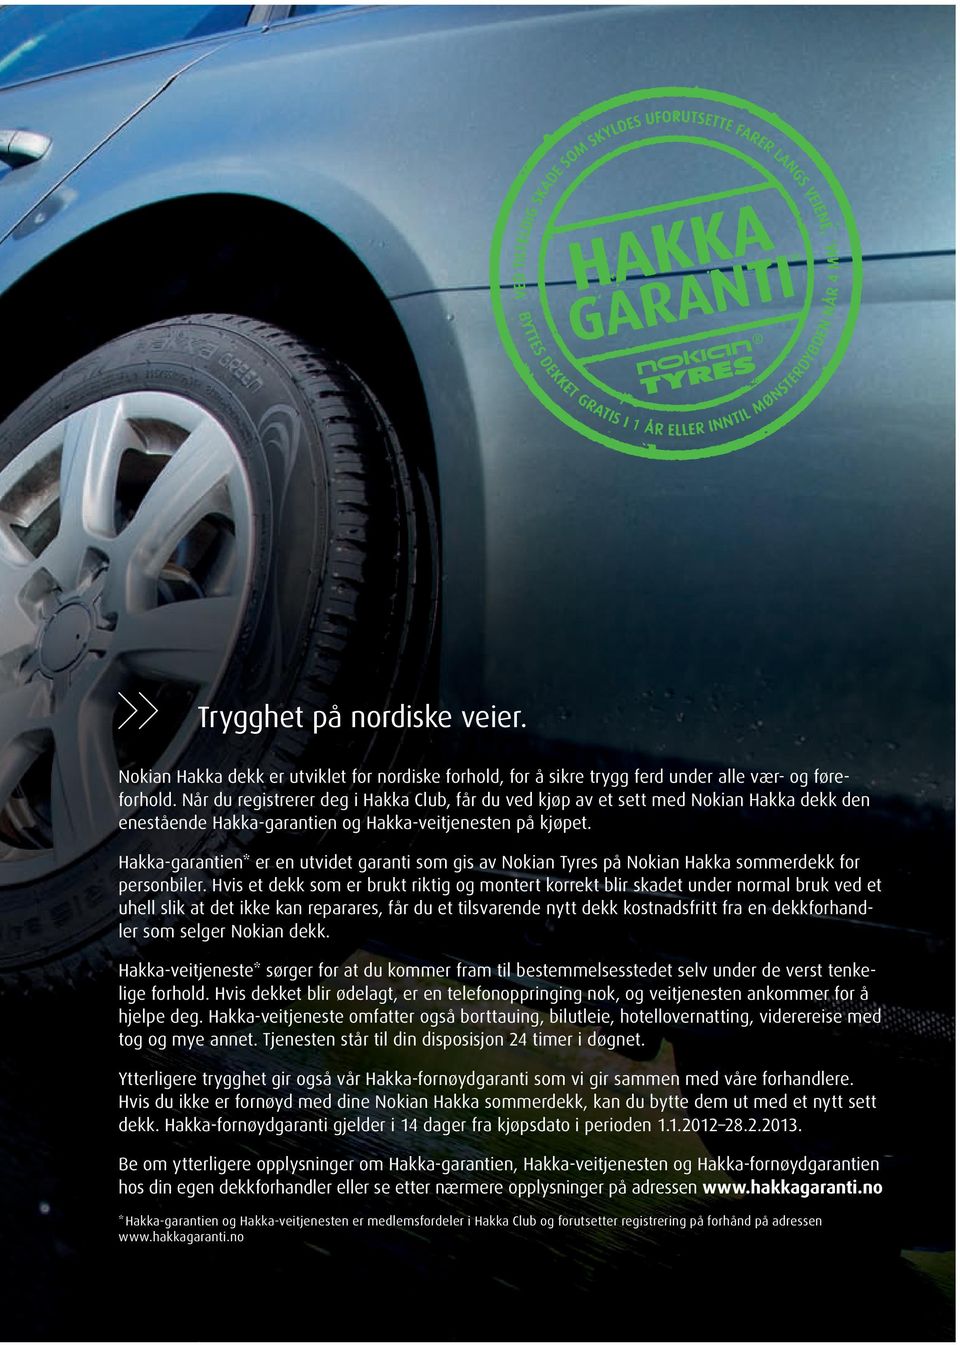 Hakka-garantien* er en utvidet garanti som gis av Nokian Tyres på Nokian Hakka sommerdekk for personbiler.